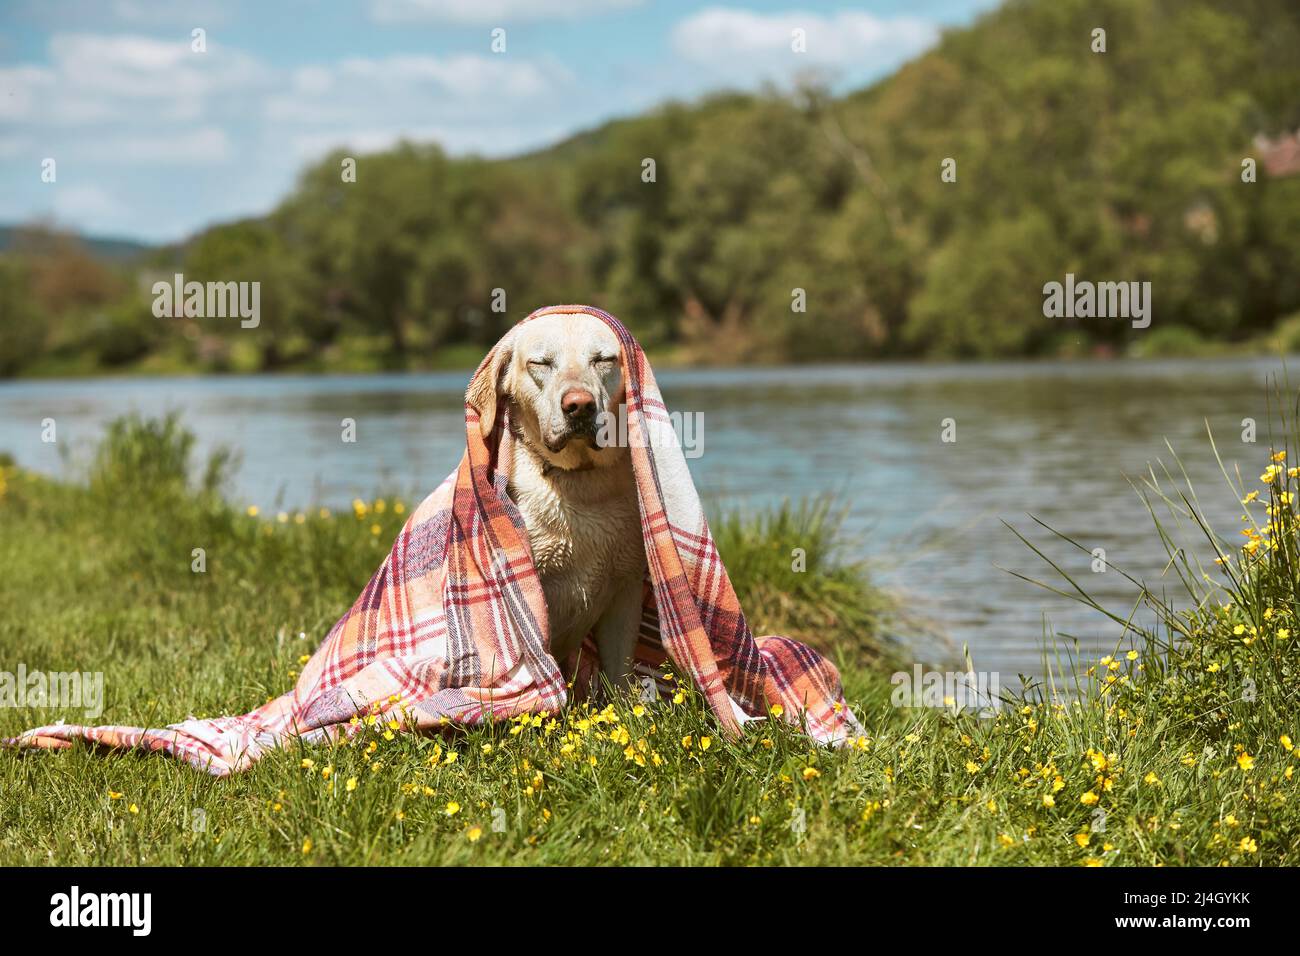 Portrait drôle de chien au bord de la rivière. Labrador humide retriver recouvert d'une couverture assise sur la prairie le jour ensoleillé du printemps. Banque D'Images